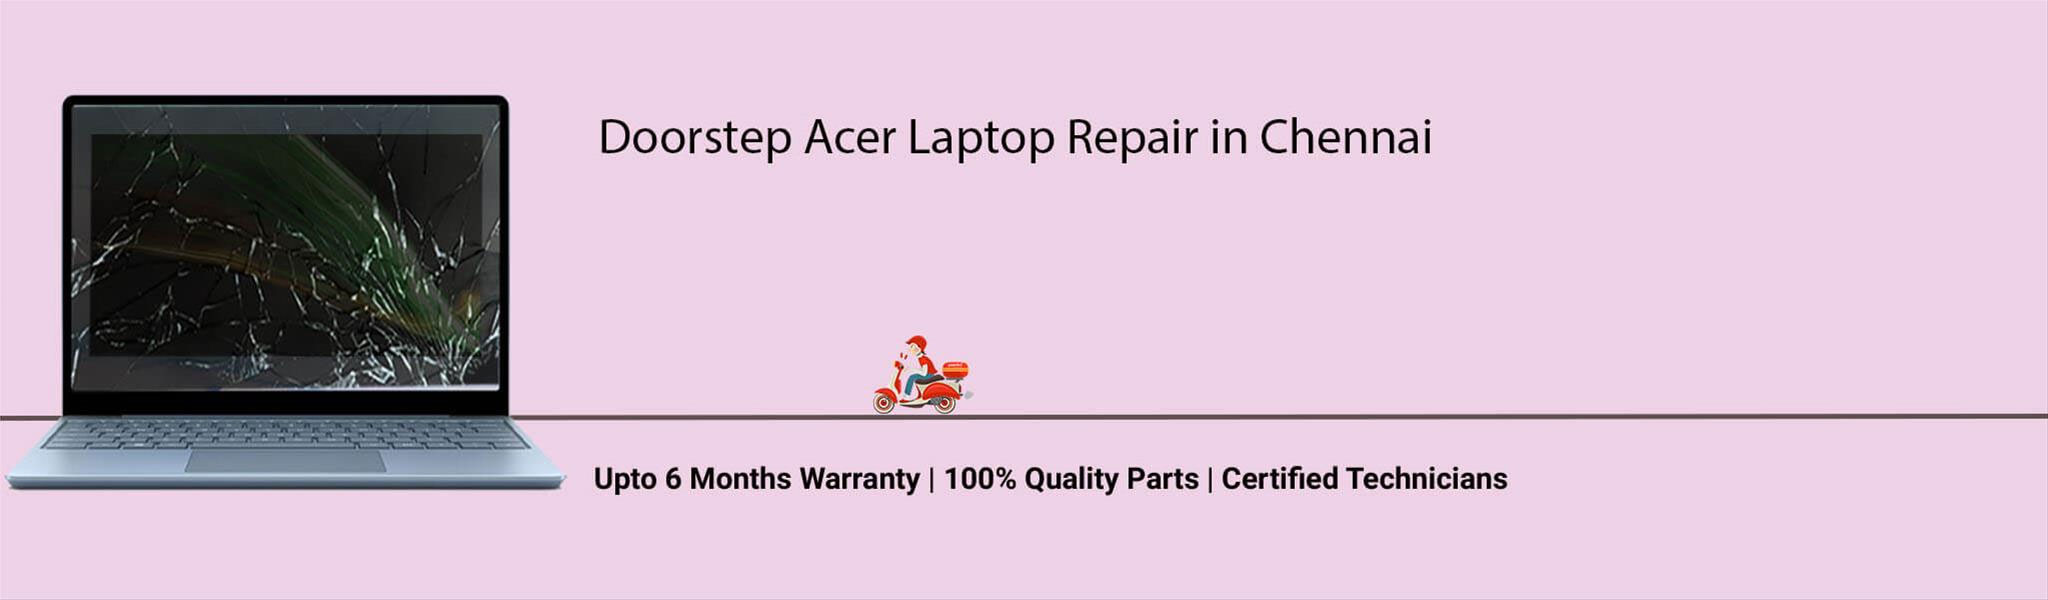 acer-laptop-banner-chennai.jpg